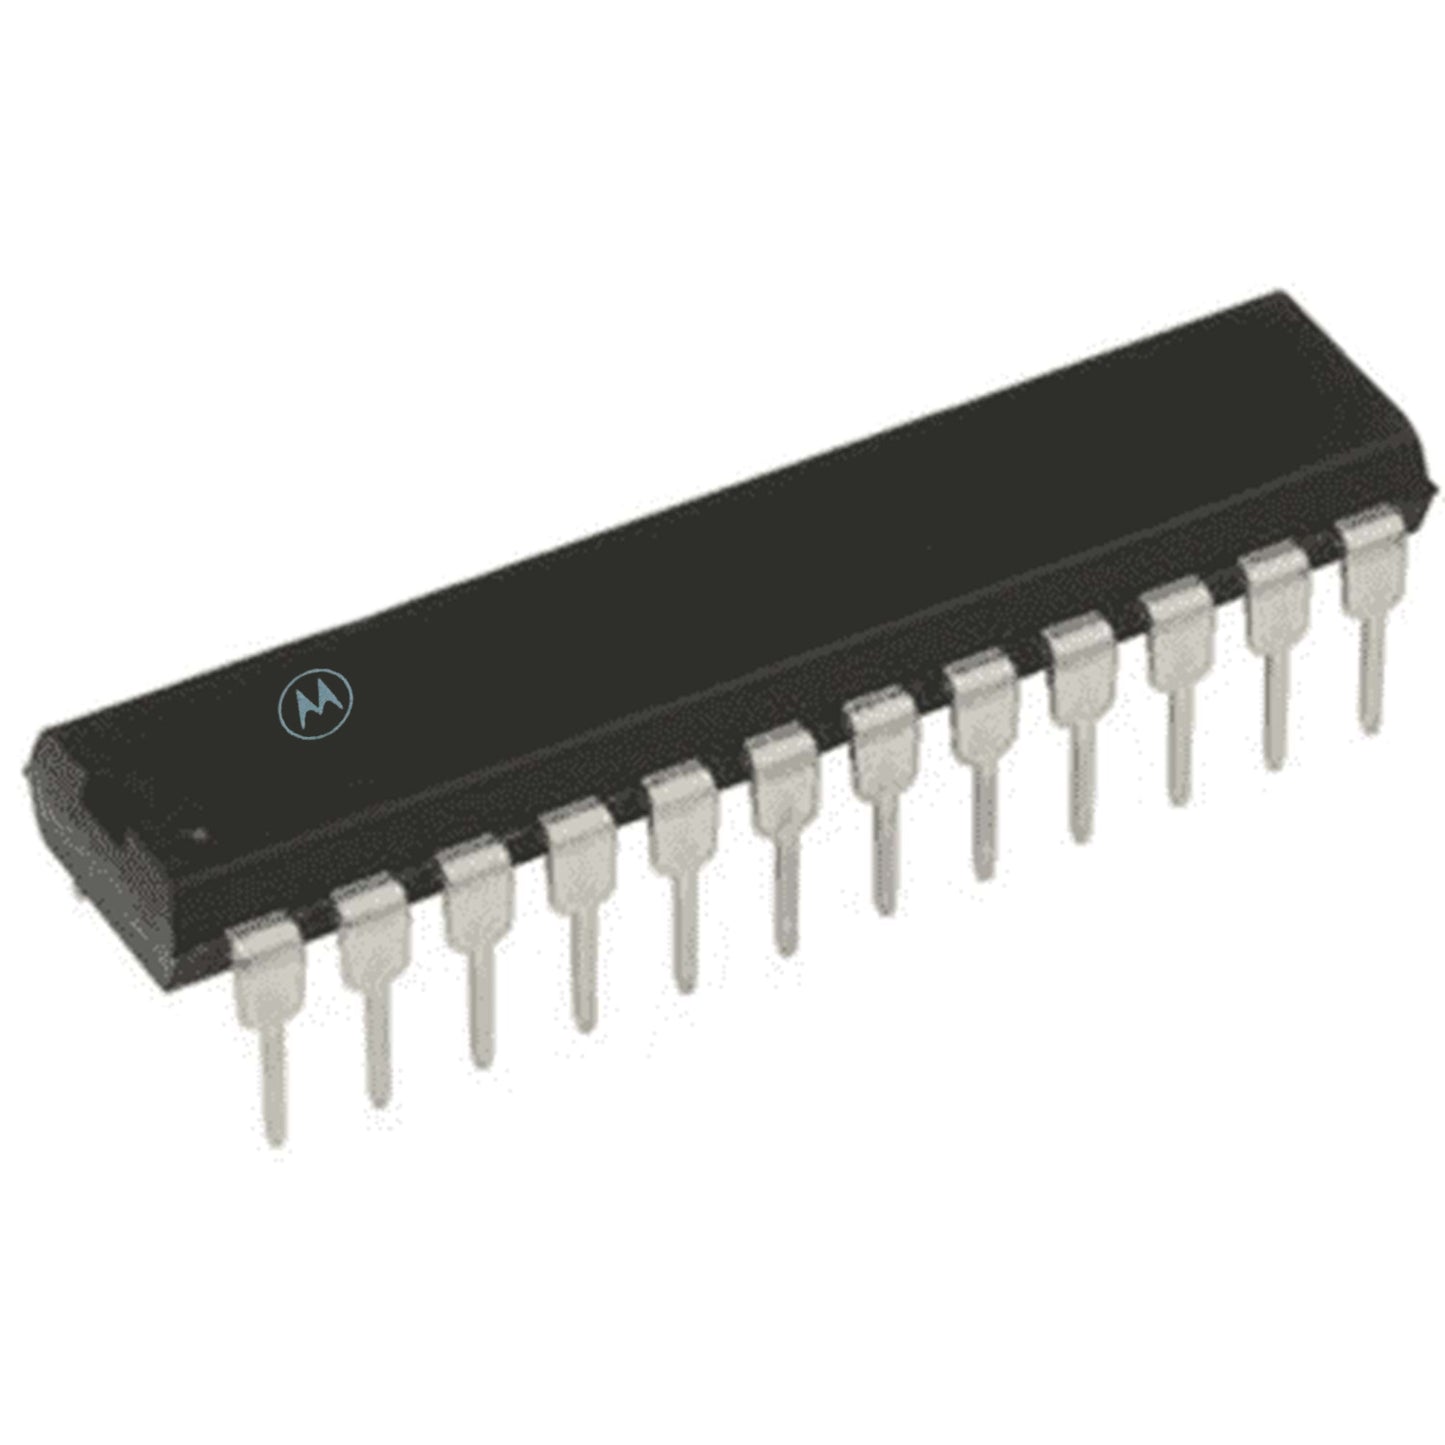 Motorola MC13282FP componente elettronico, circuito integrato, 24 contatti